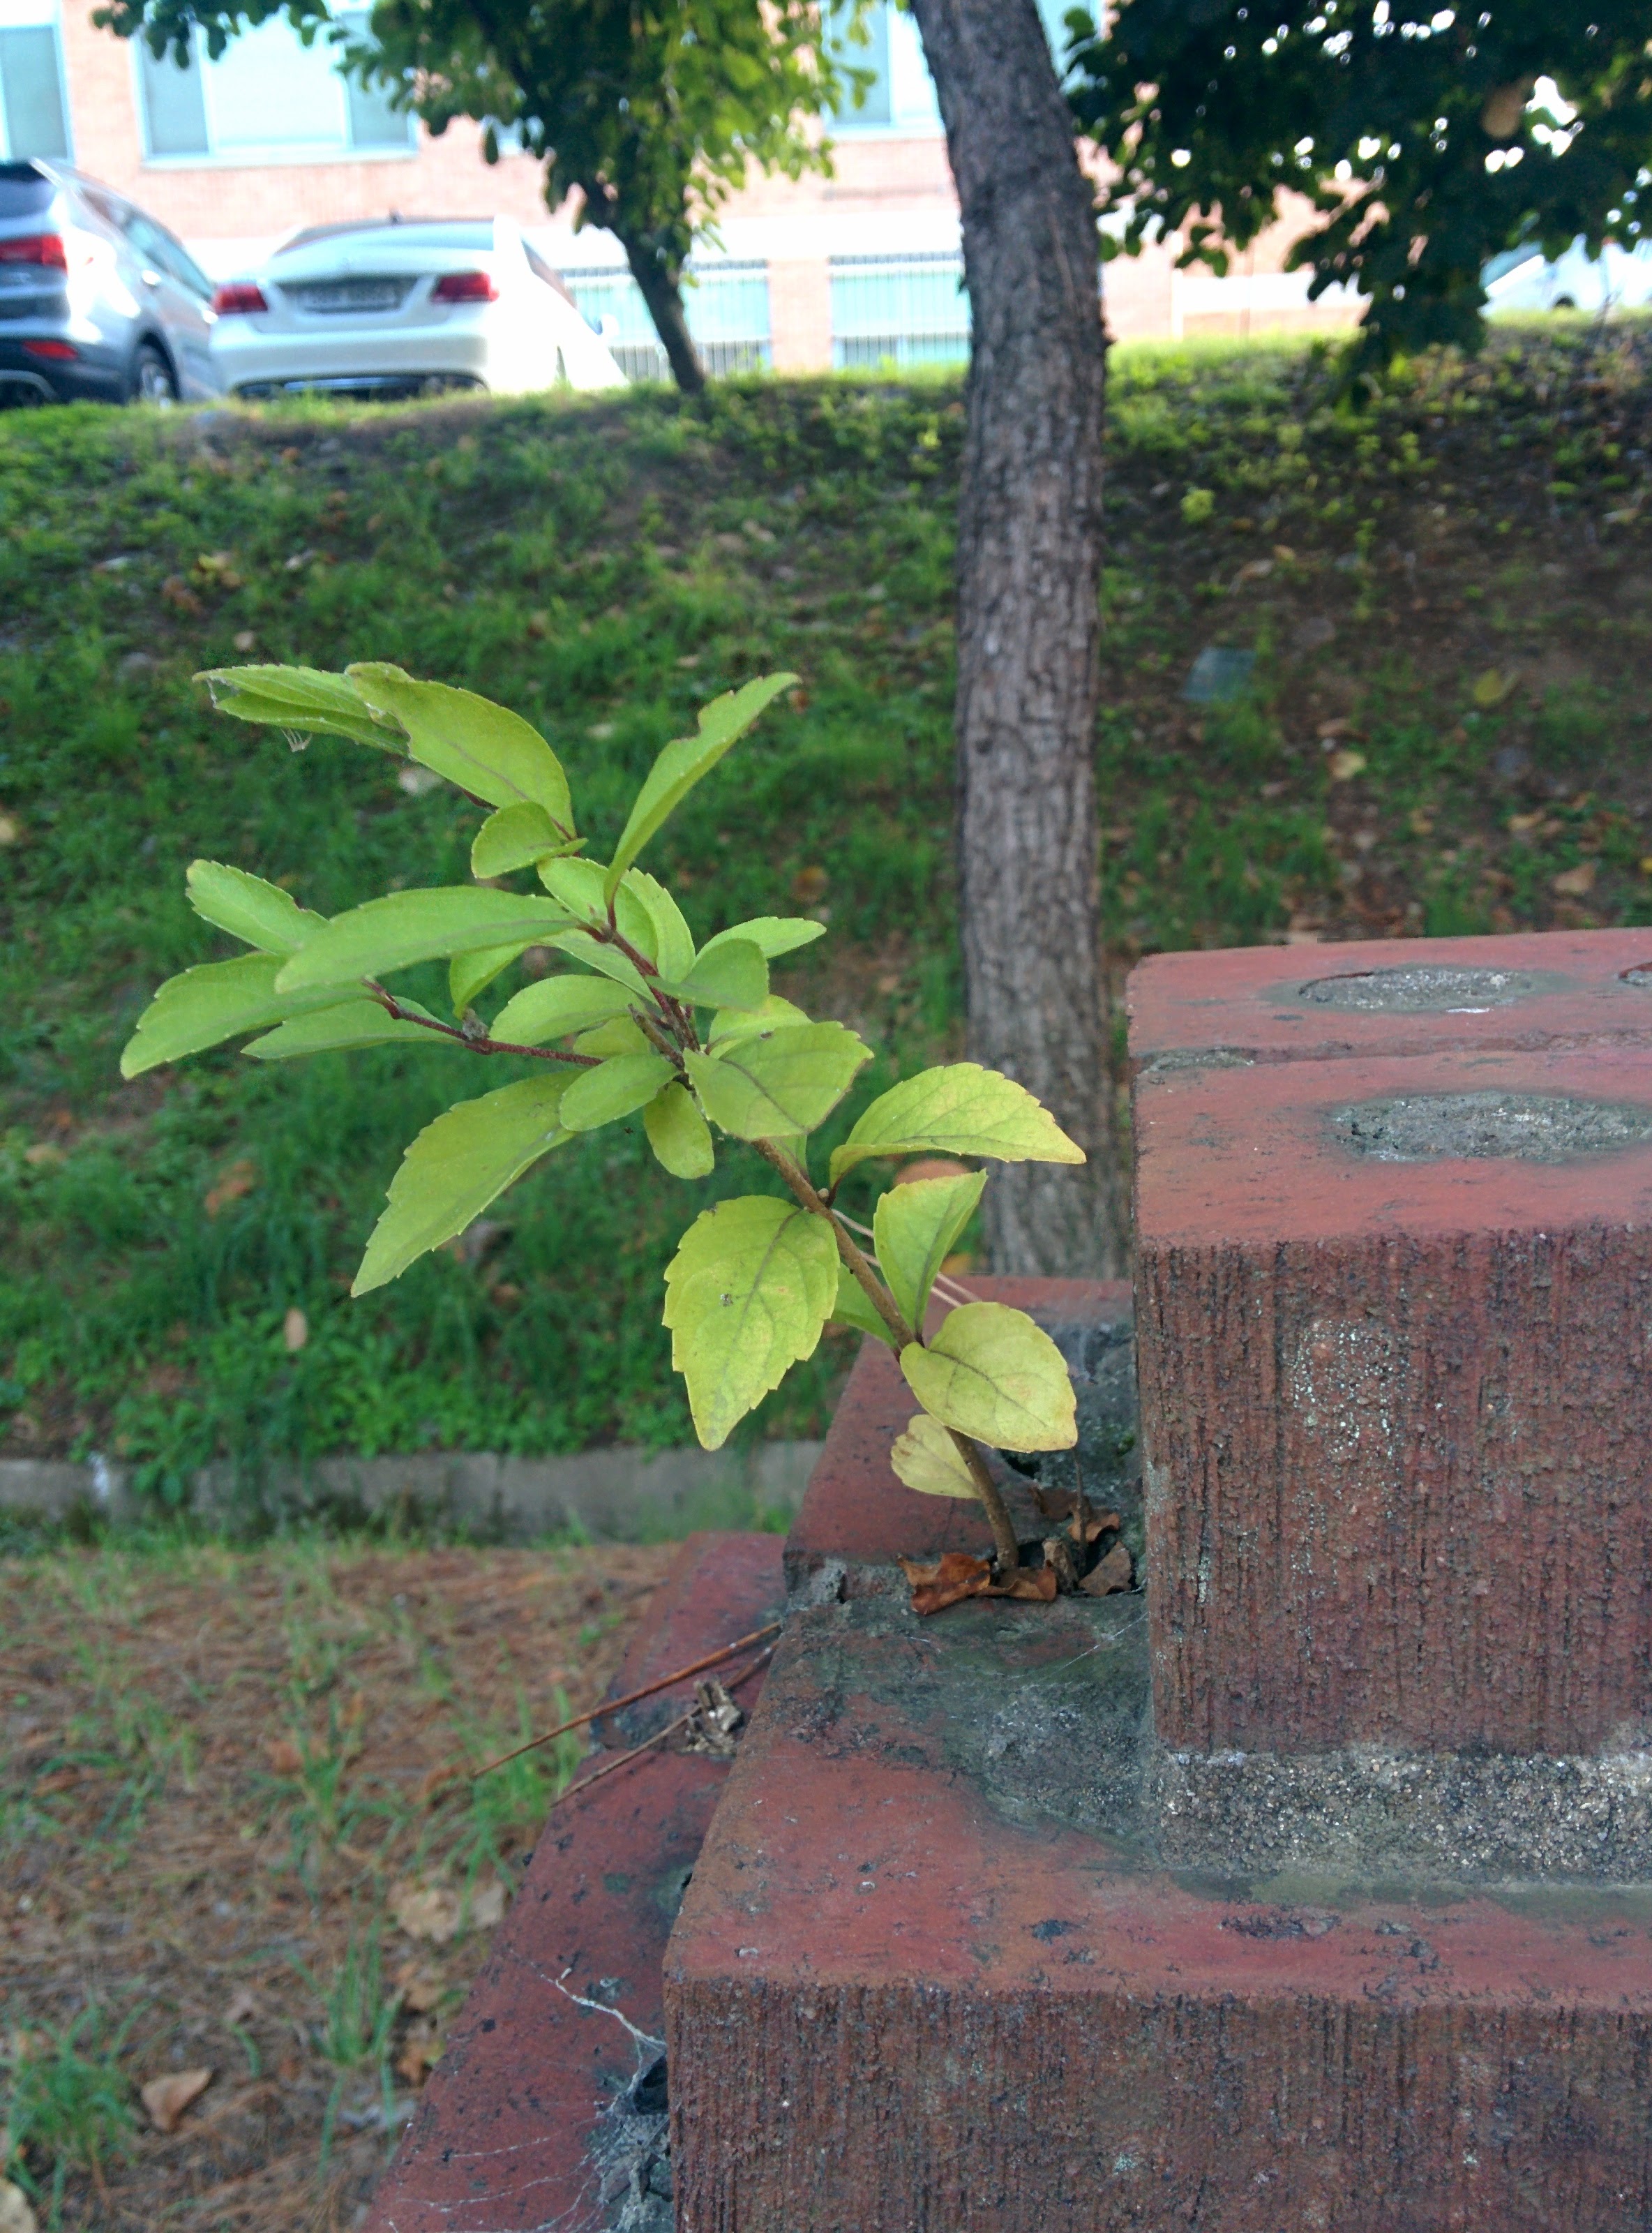 IMG_20151014_172419.jpg 아름다운 생명력... 담장 위에서 자라는 어린 나무 -- 느티나무